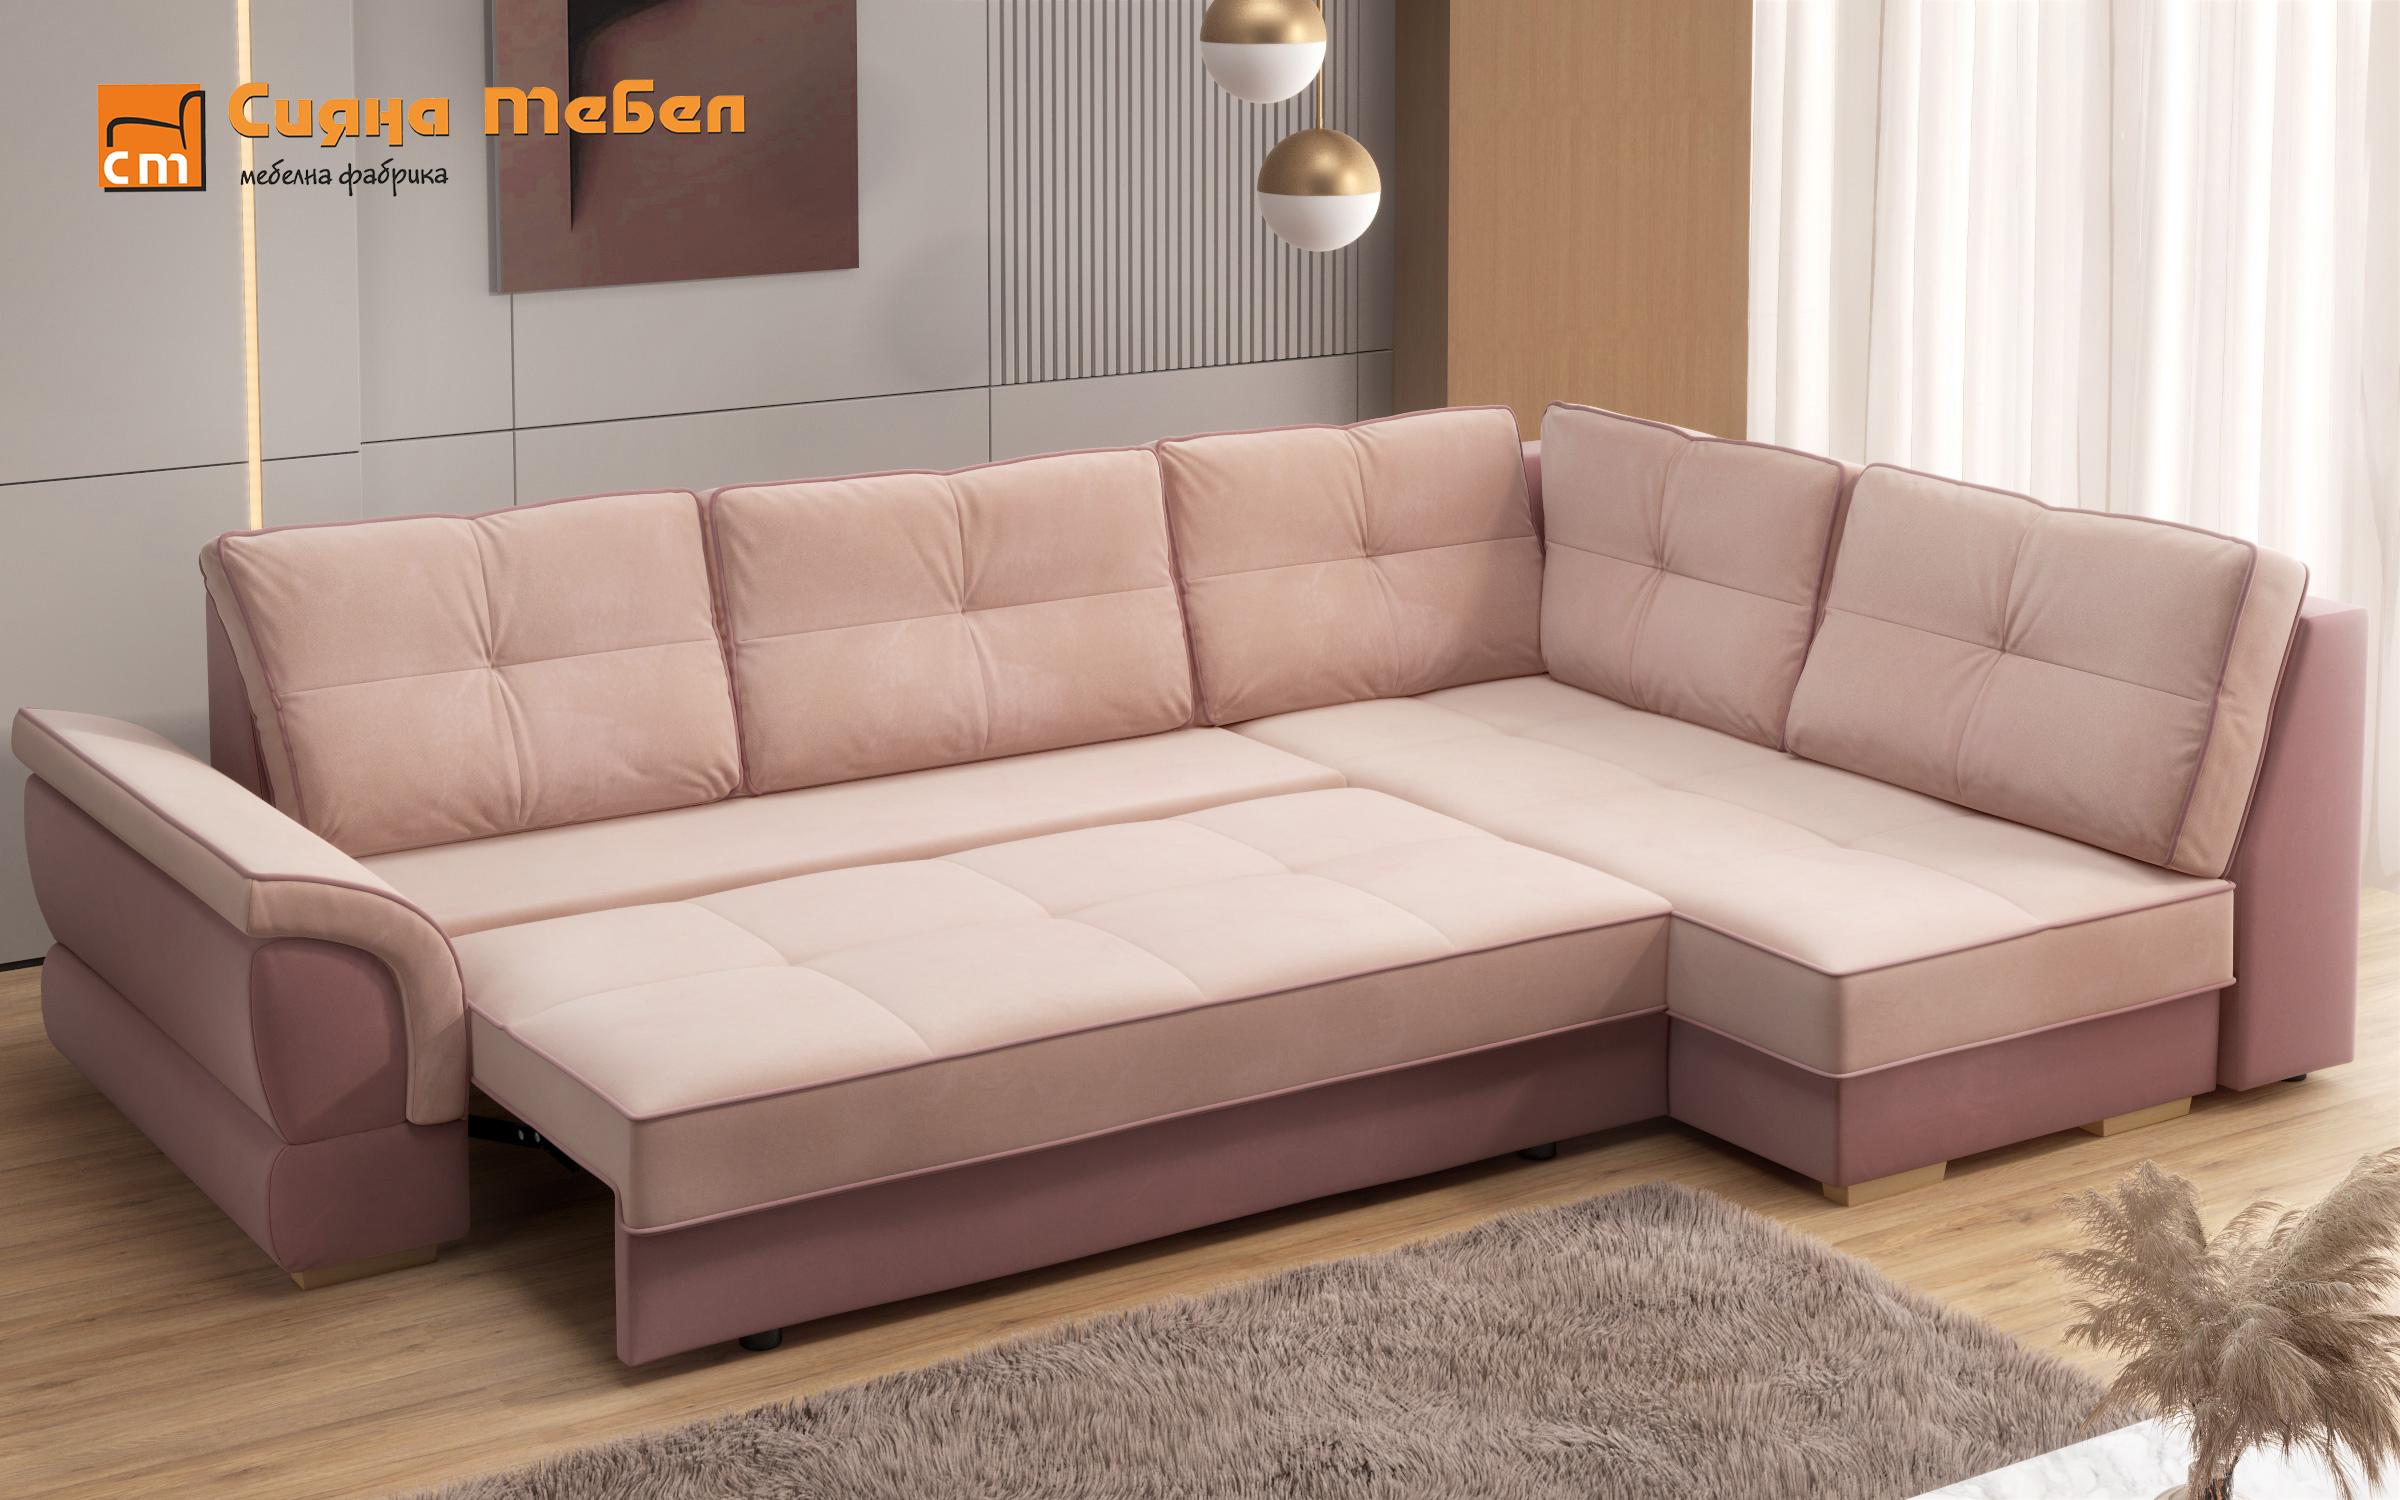 Γωνιακός καναπές Next, ροζ + ανοιχτό ροζ  5